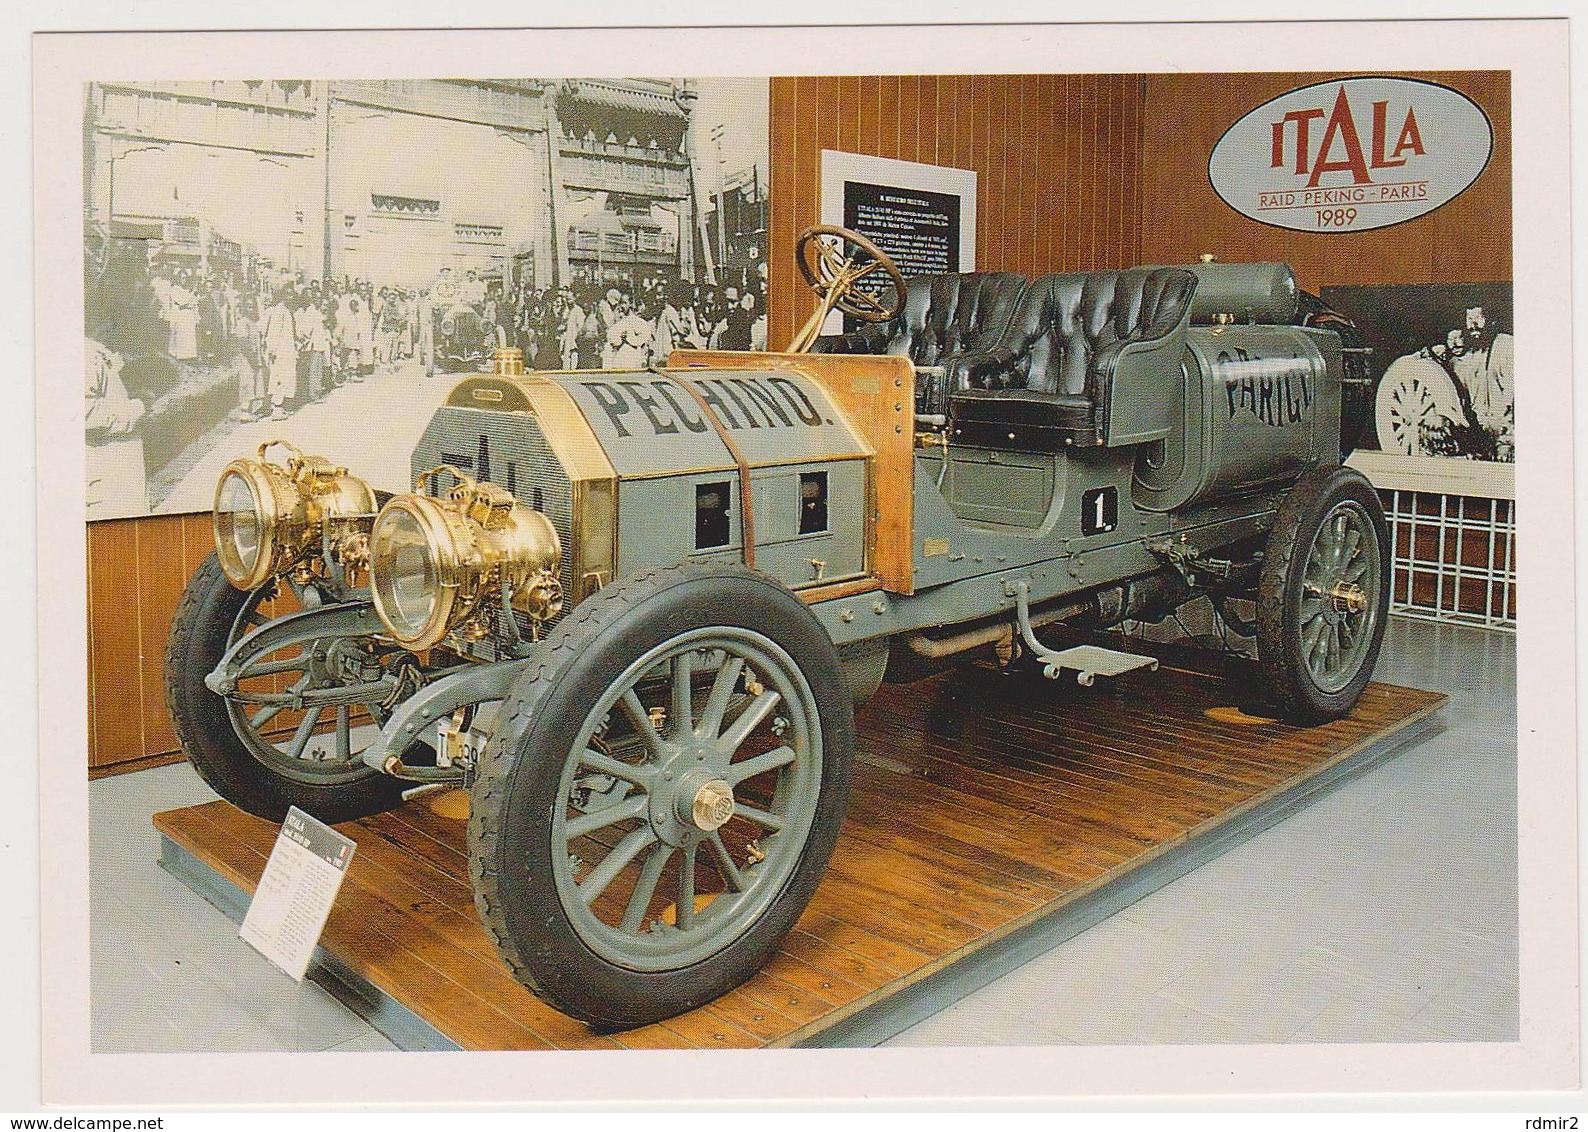 1446/ ITALA Mod. 35-45 HP, Raid Peking-Paris 1907. Museo Dell'Automobile Carlo Biscaretti Di Ruffia, Torino. - Voitures De Tourisme